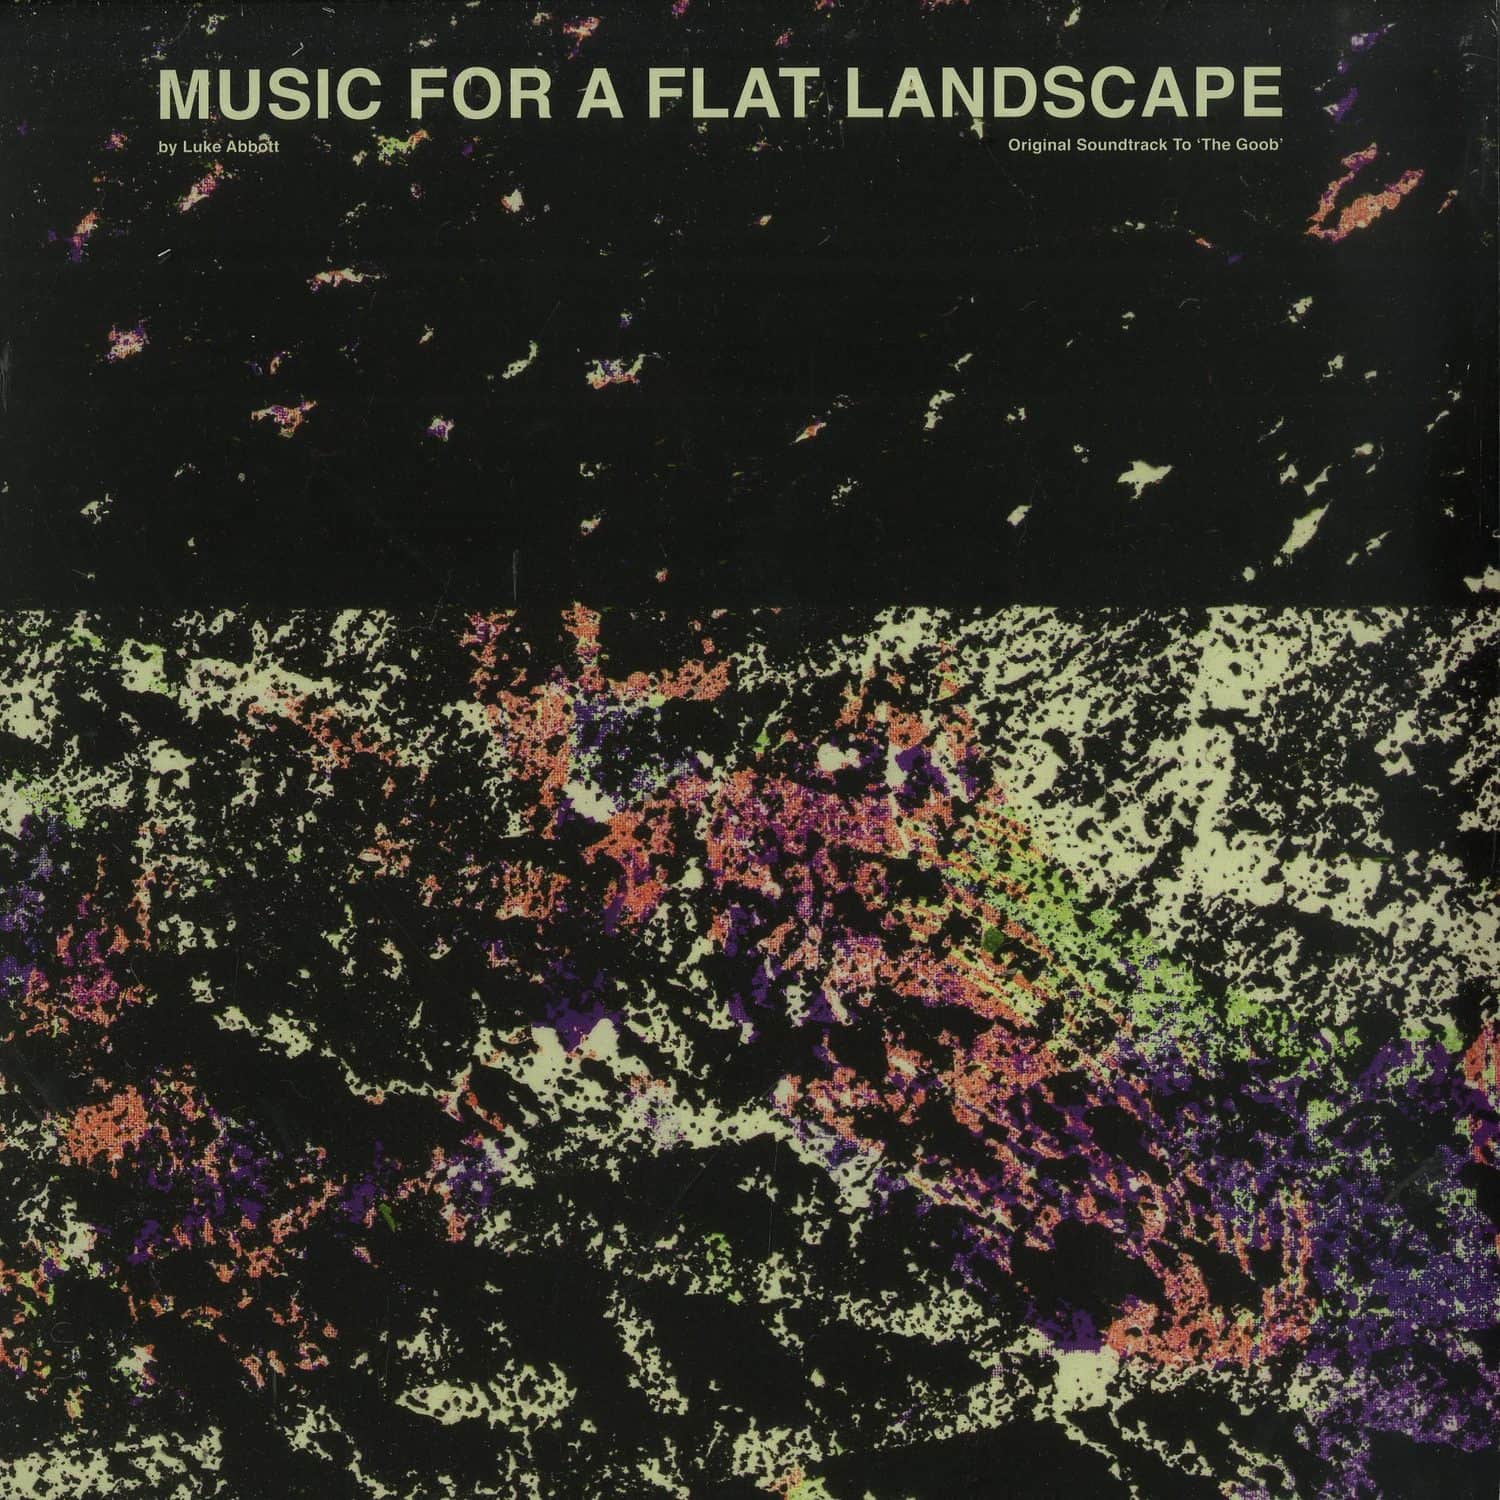 Luke Abbott - MUSIC FOR A FLAT LANDSCAPE - THE GOOB O.S.T. 